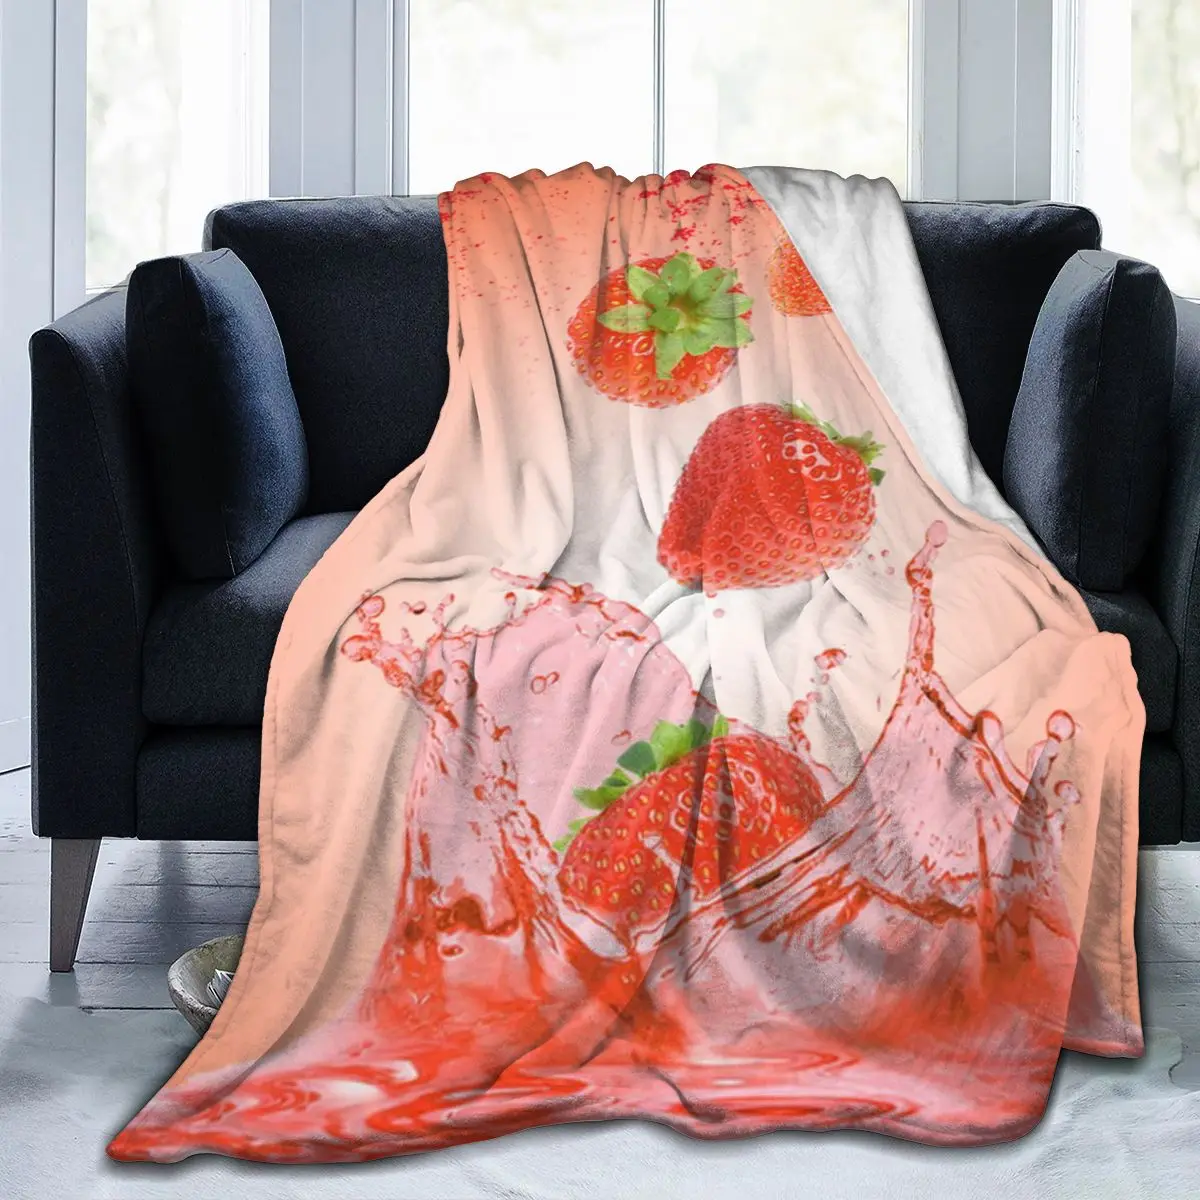 

Модное удобное эргономичное постельное белье с 3D принтом, мягкое квадратное одеяло для пикника, мягкое быстросохнущее фруктовое одеяло